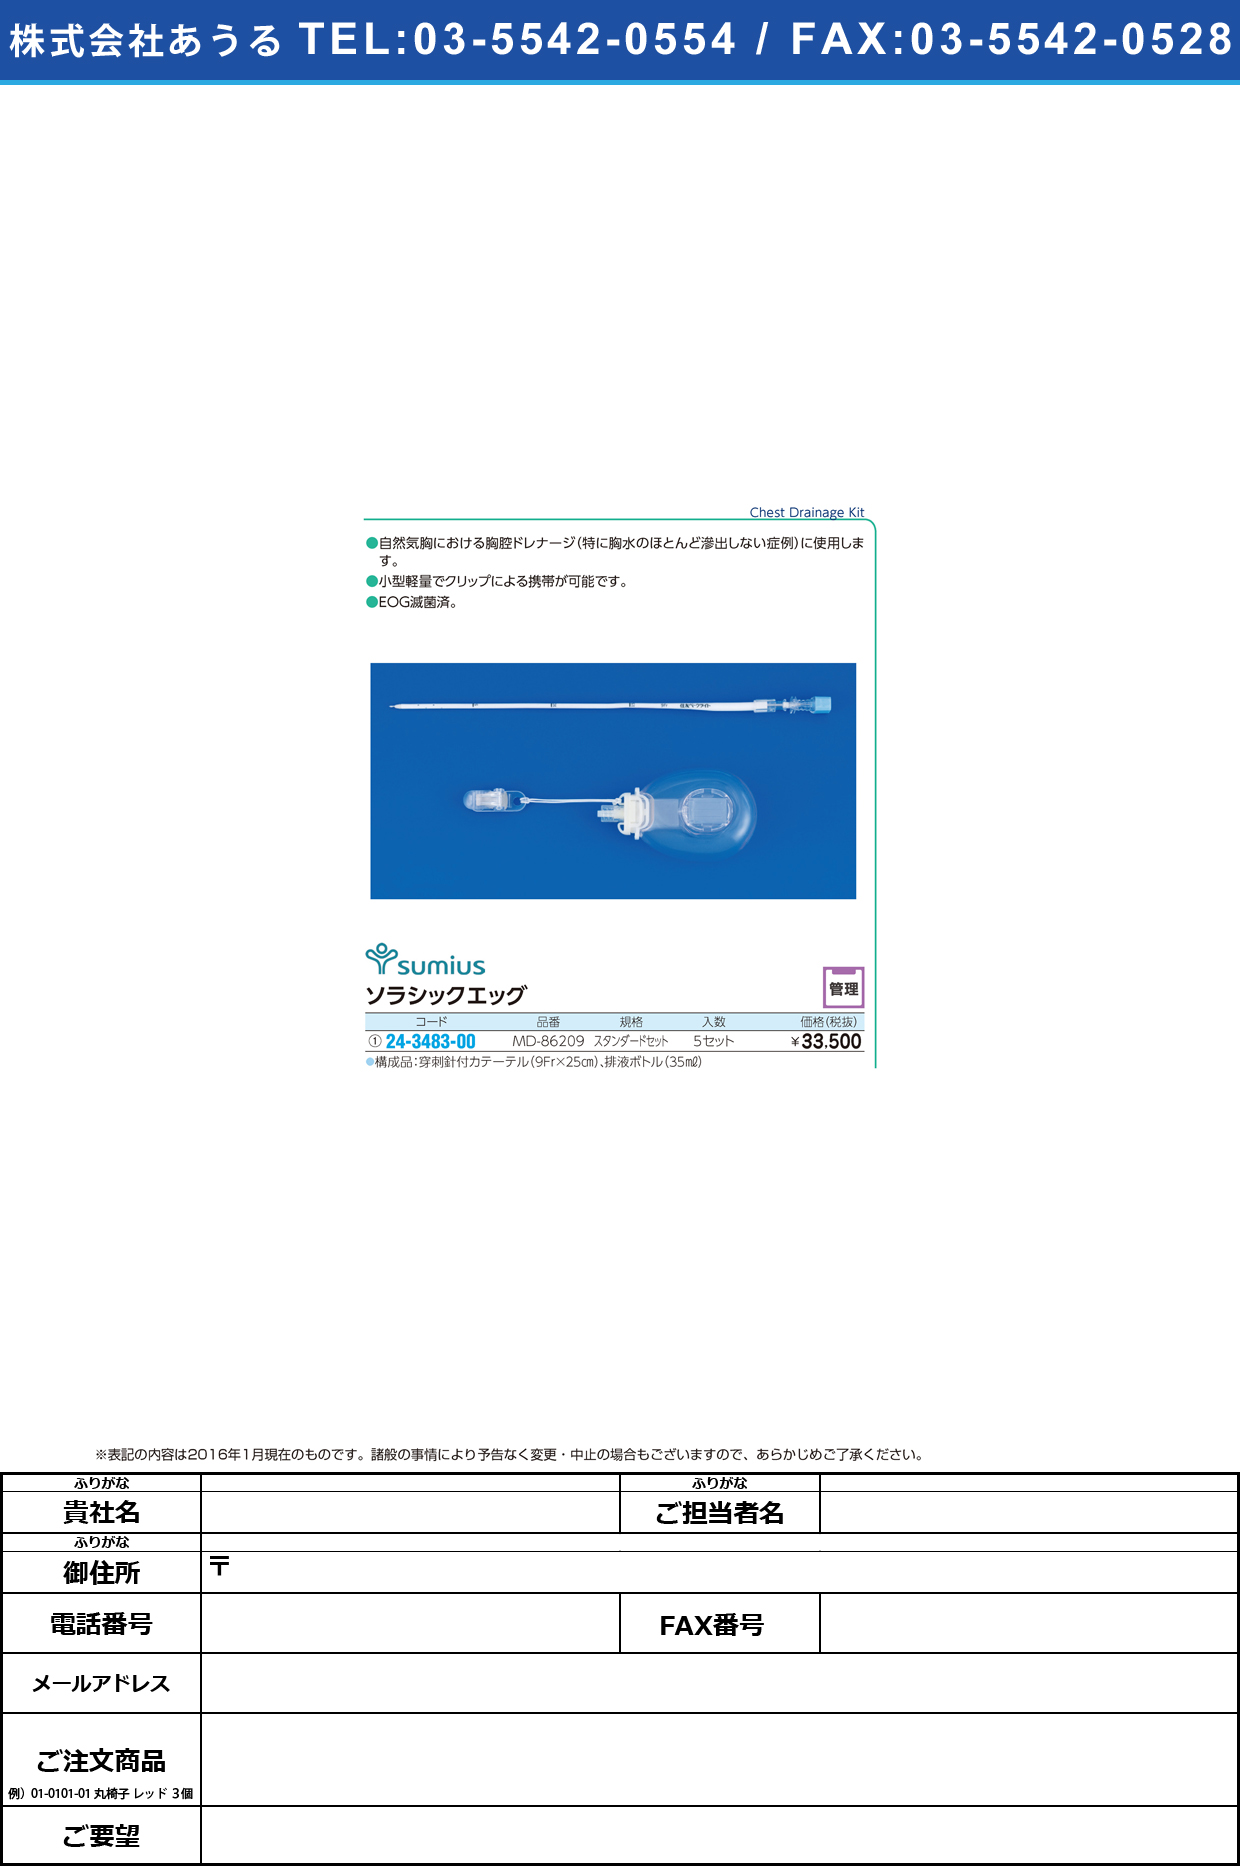 (24-3483-00)ソラシックエッグ ｿﾗｼｯｸｴｯｸﾞ MD-86209(5ｲﾘ)【1箱単位】【2016年カタログ商品】